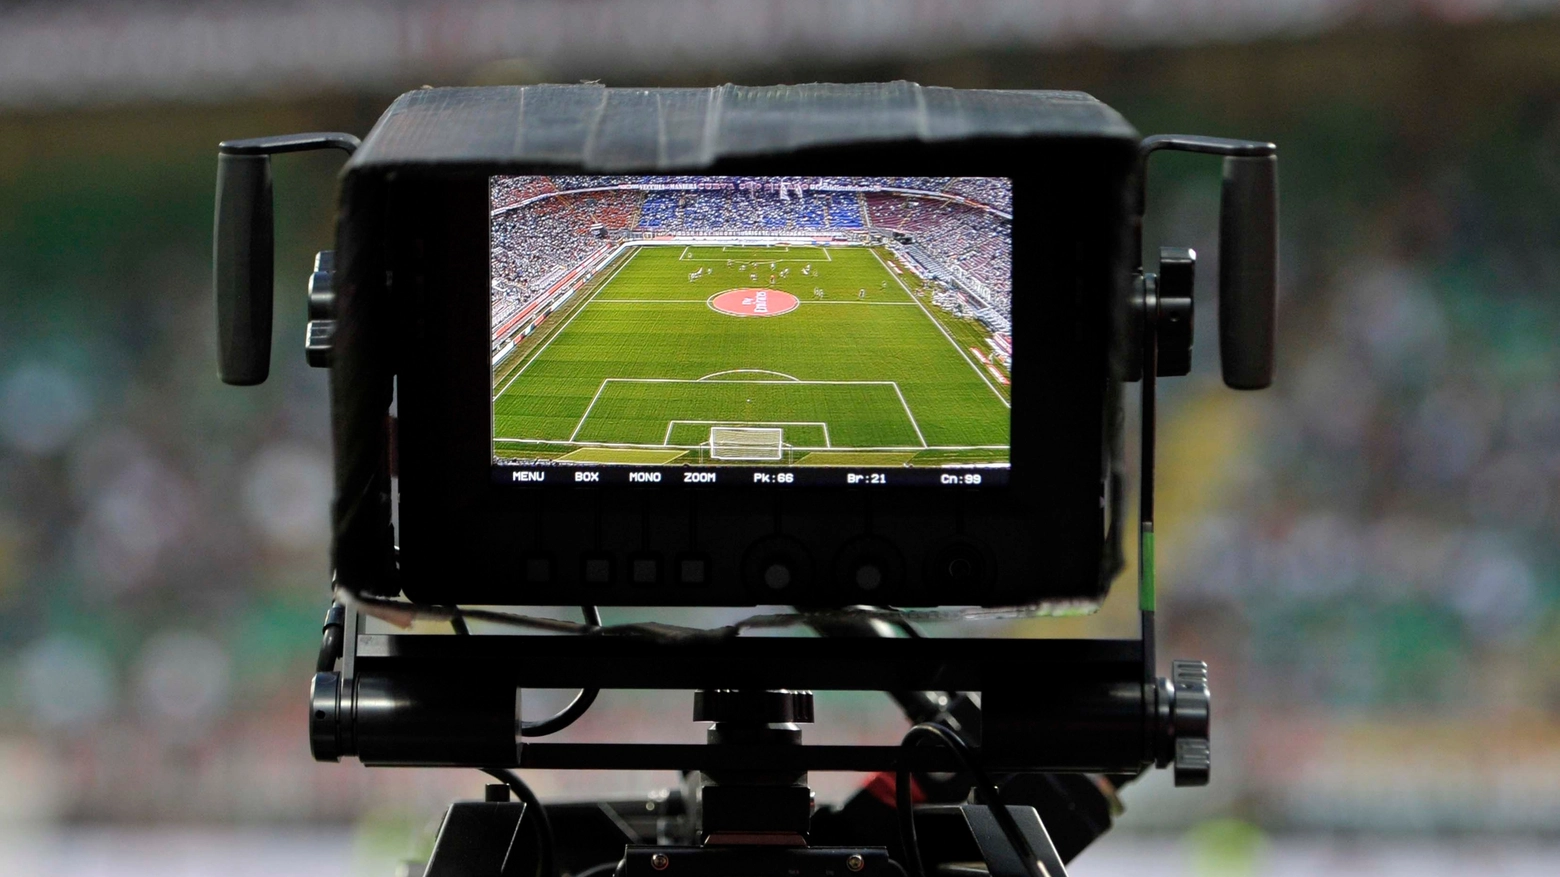 Multe in arrivano per chi guarda partite di calcio su siti streaming illegali